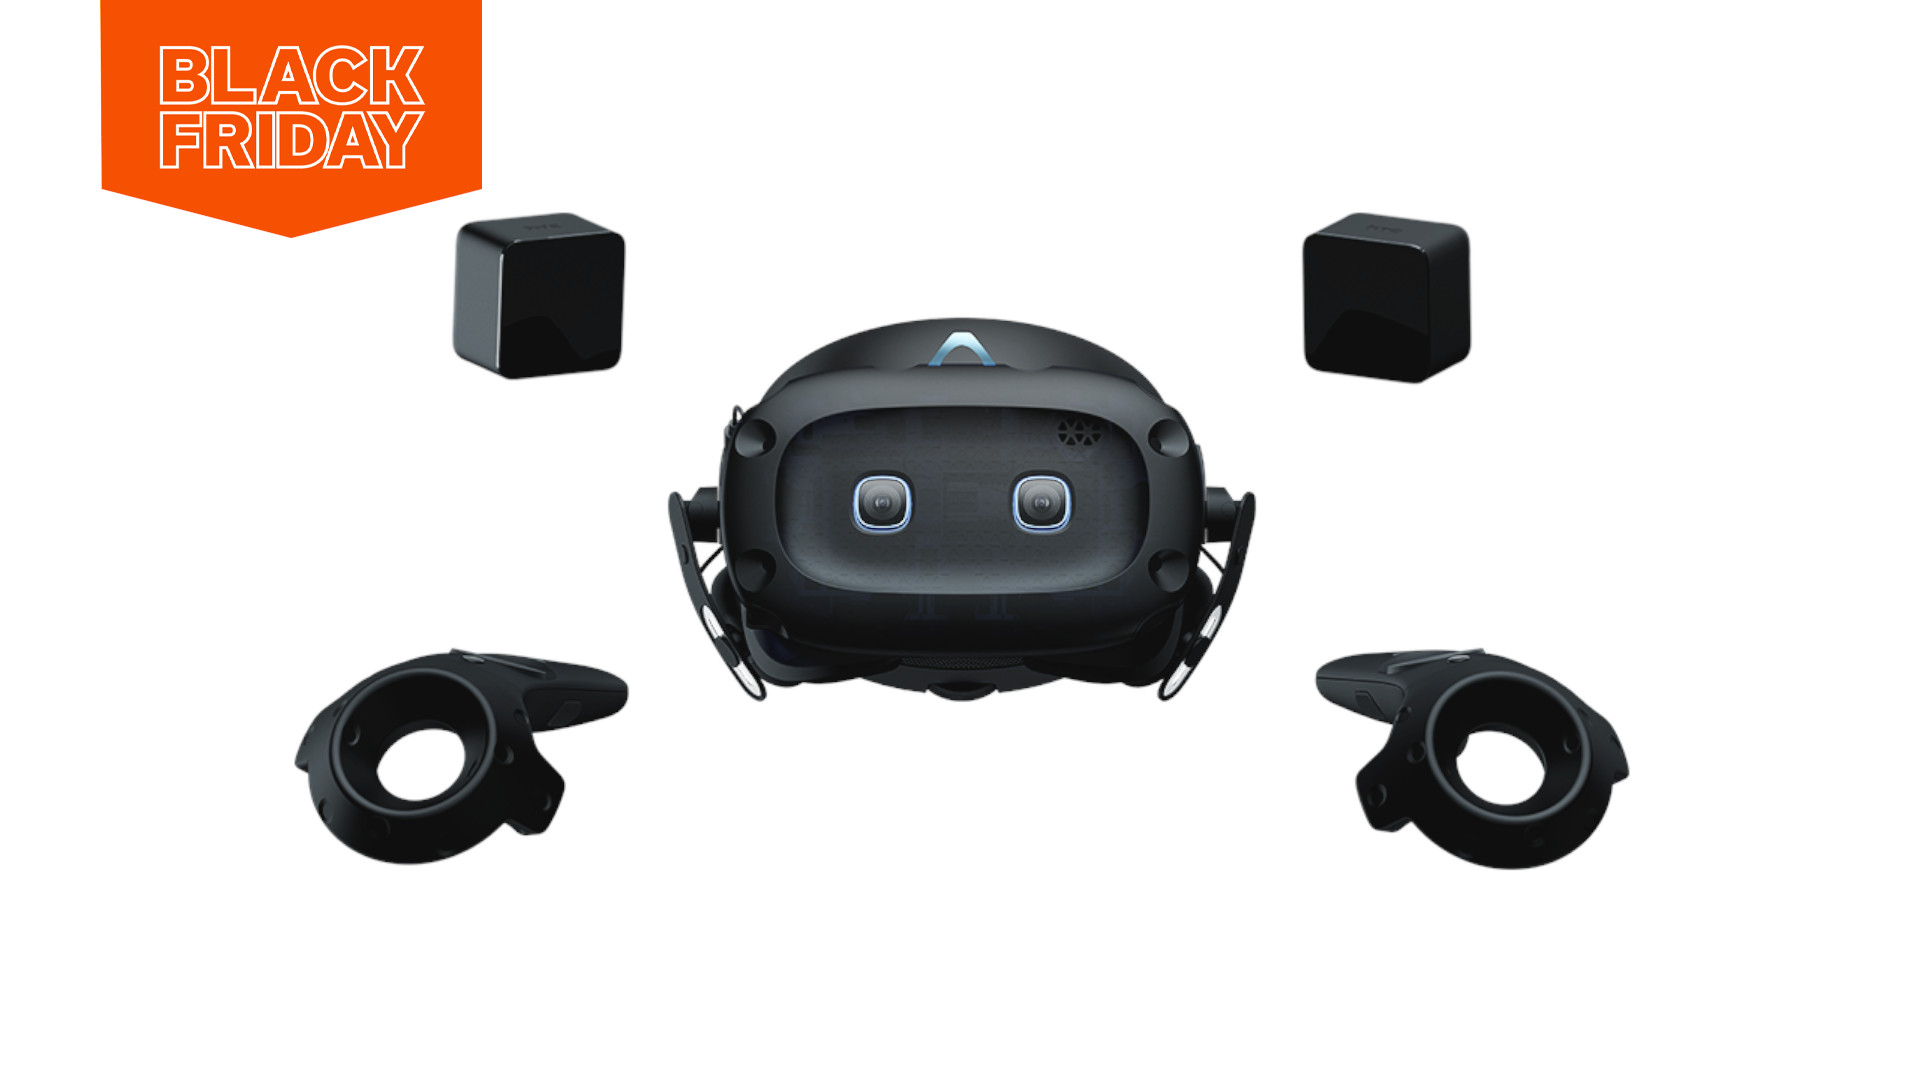 Sparen Sie 250 HTC Vive Cosmos Elite VR-Headset Black Friday 1